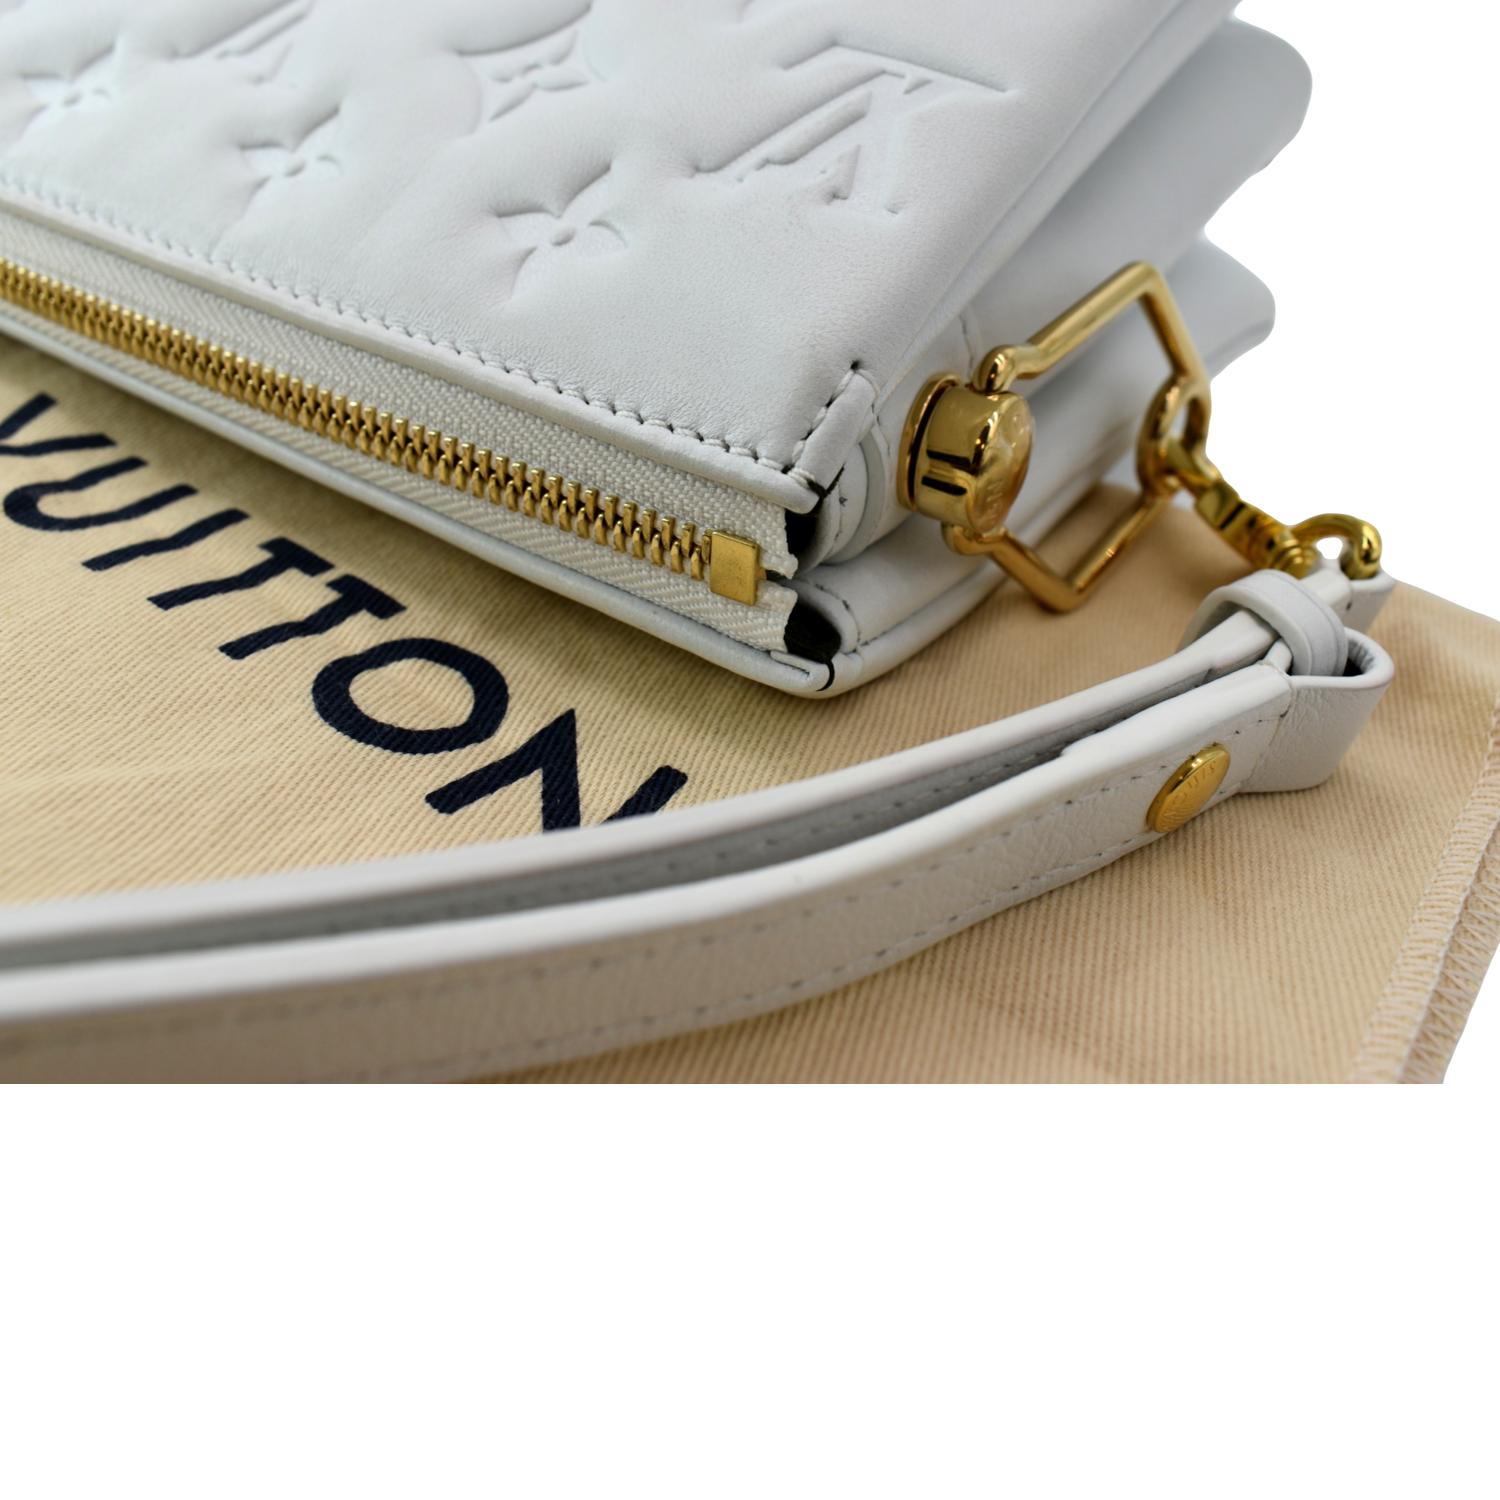 Louis Vuitton White Leather Monogram COUSSIN BB